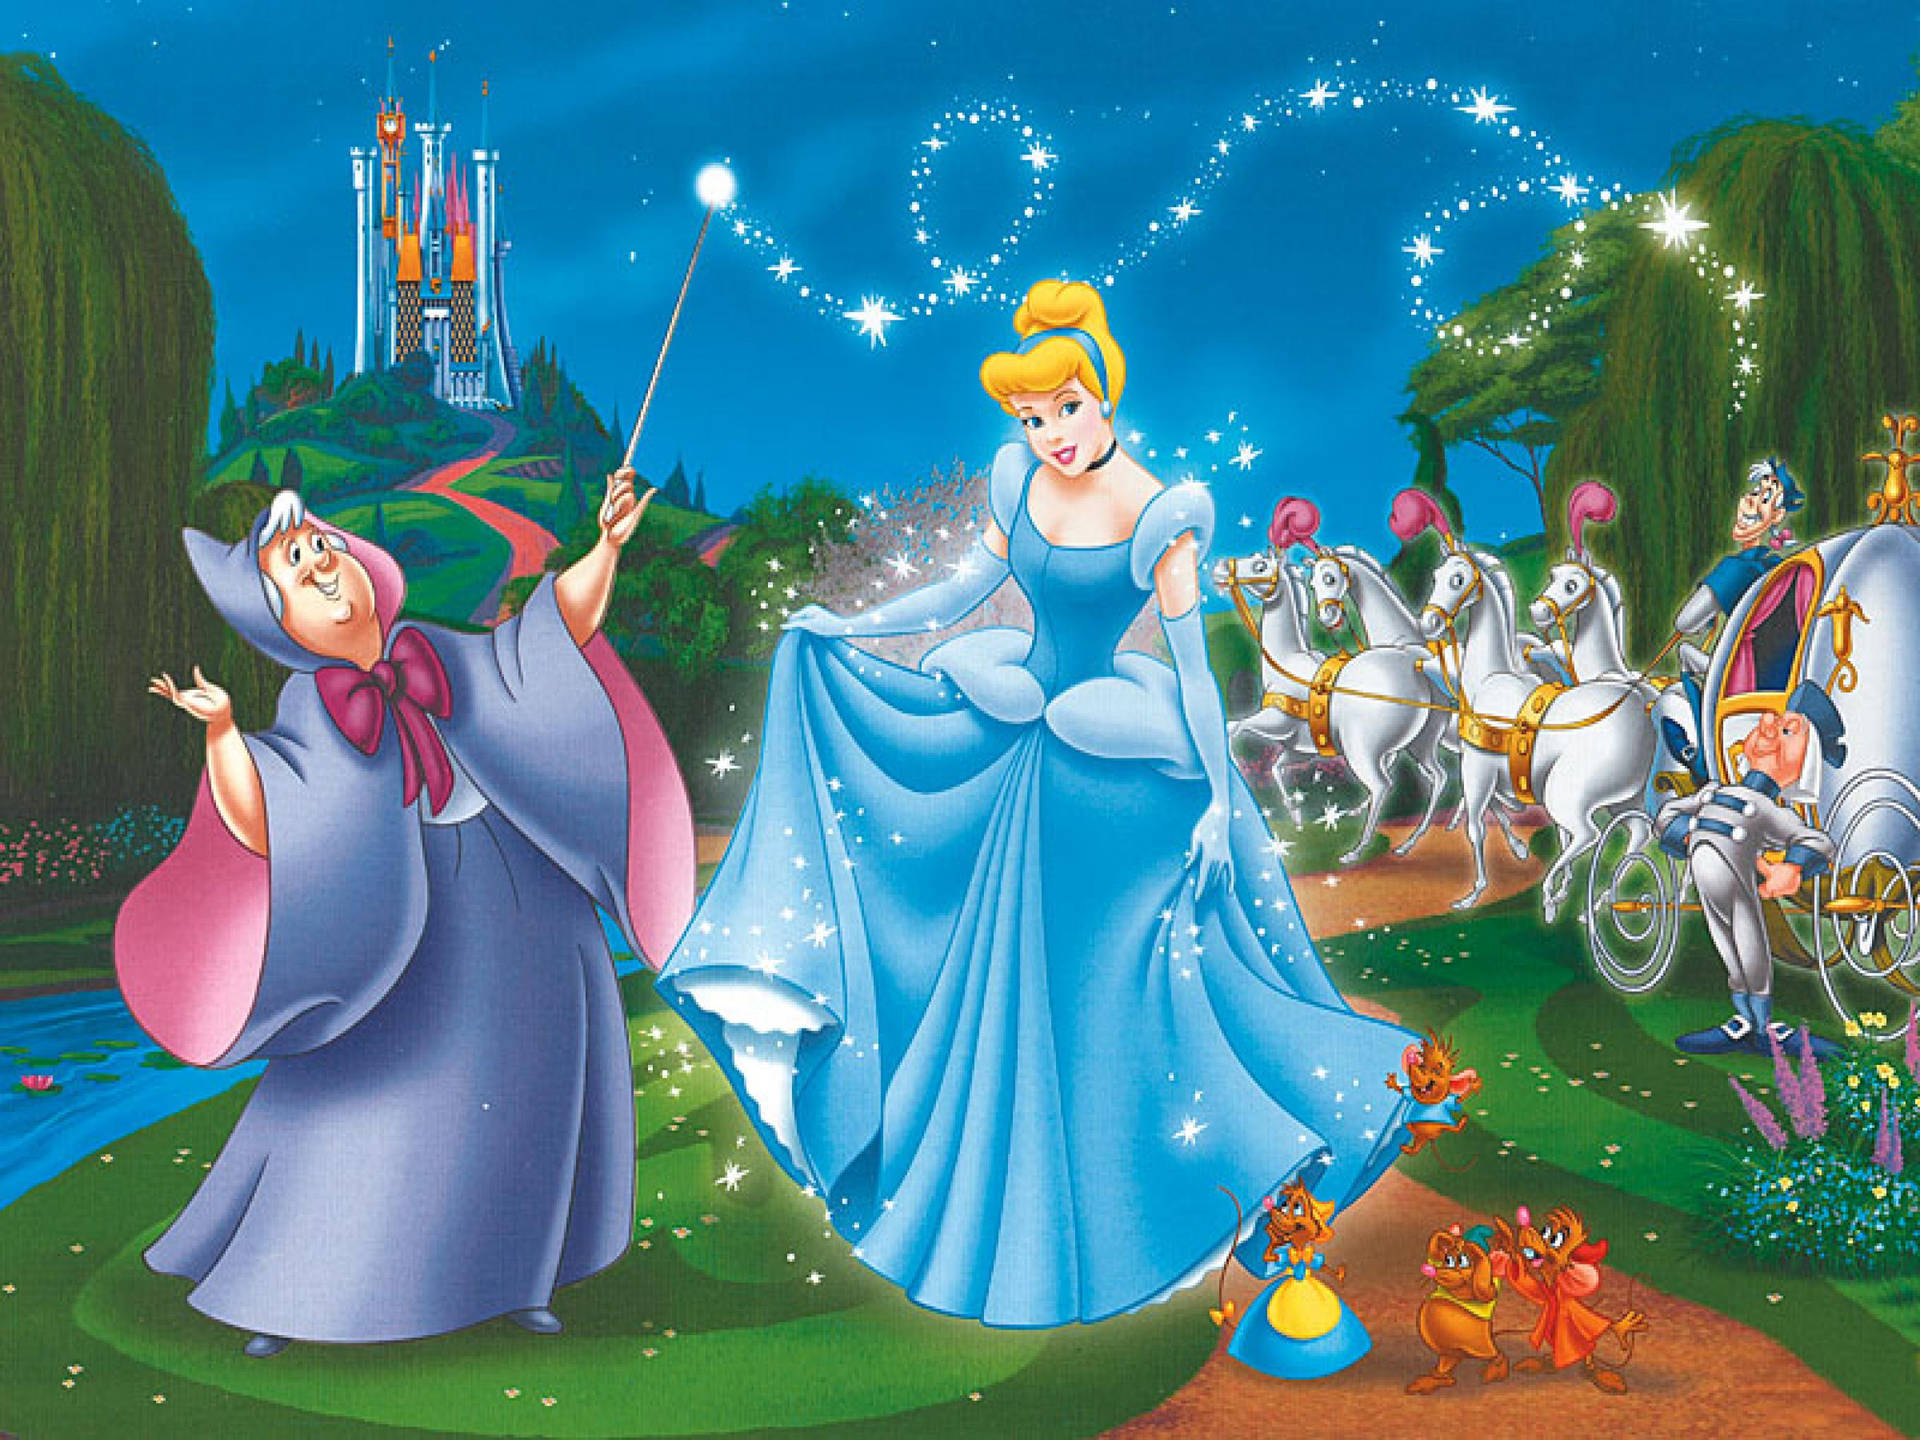 Magical Princess Cinderella